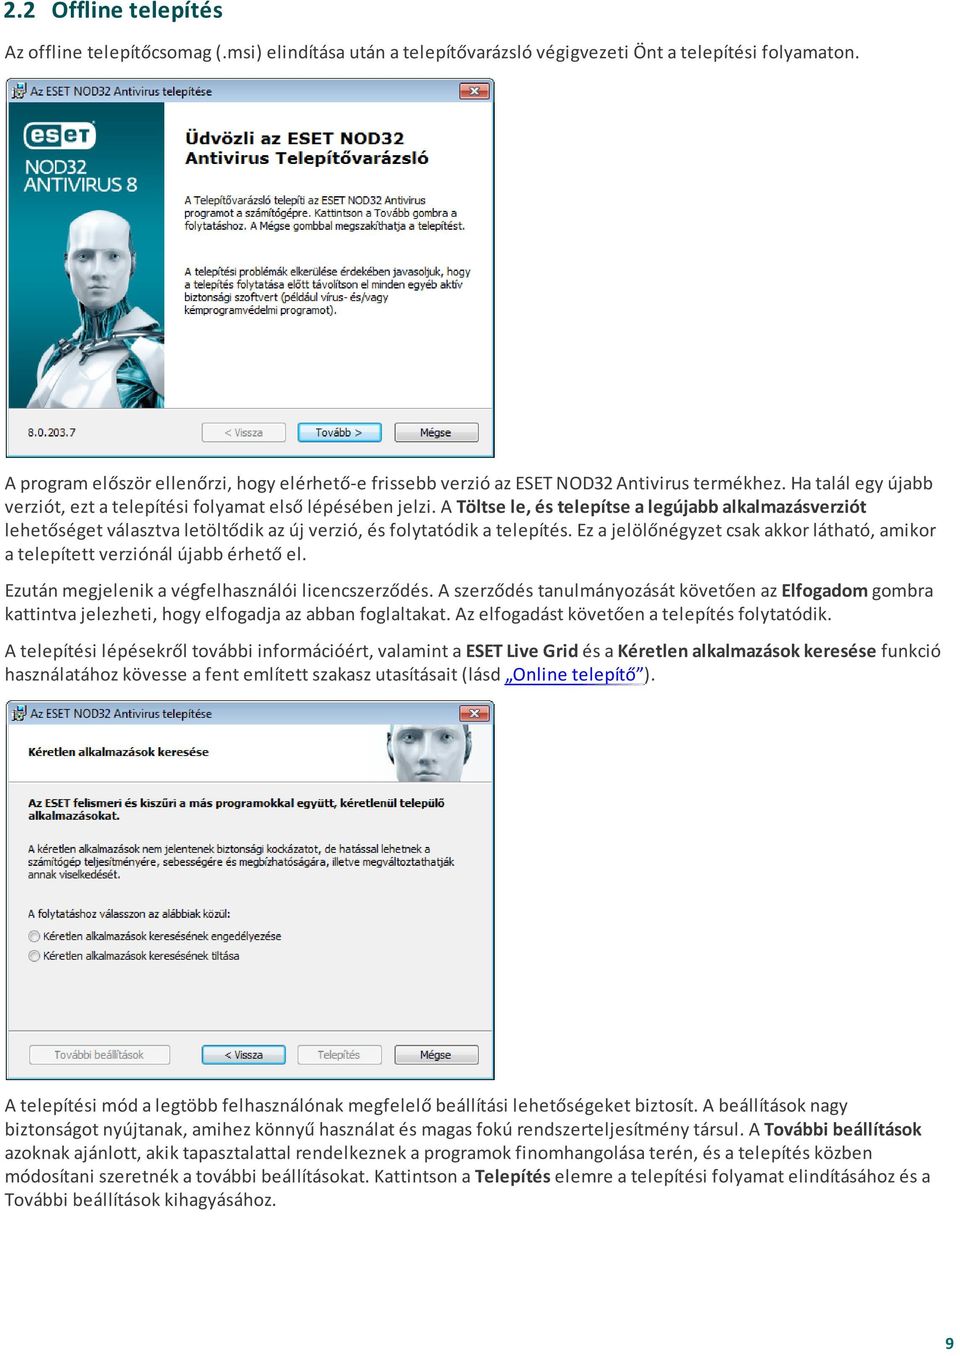 ESET NOD32 ANTIVIRUS 8 - PDF Ingyenes letöltés